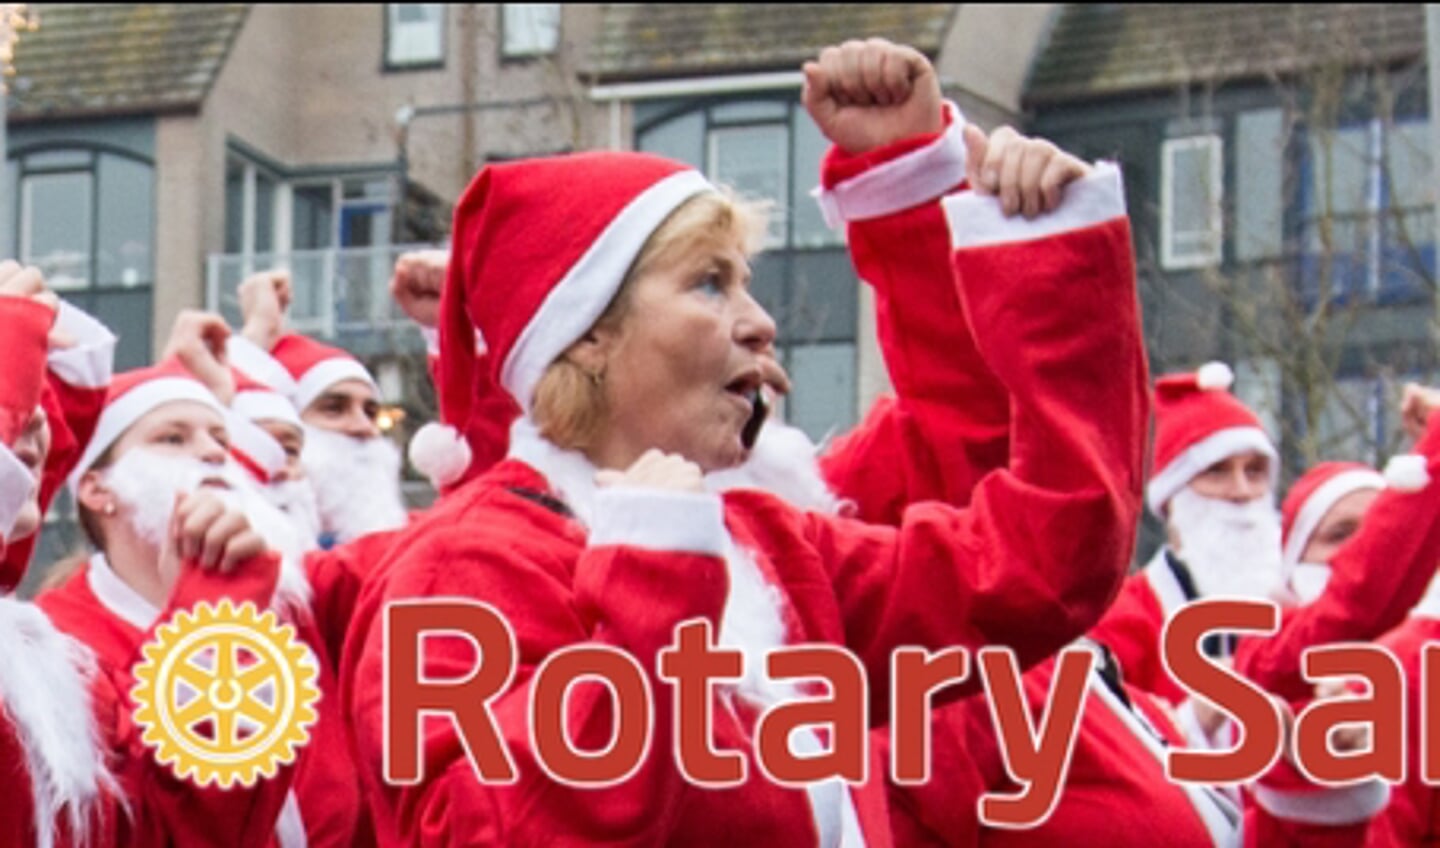 De sfeer tijdens de Rotary Santa Run